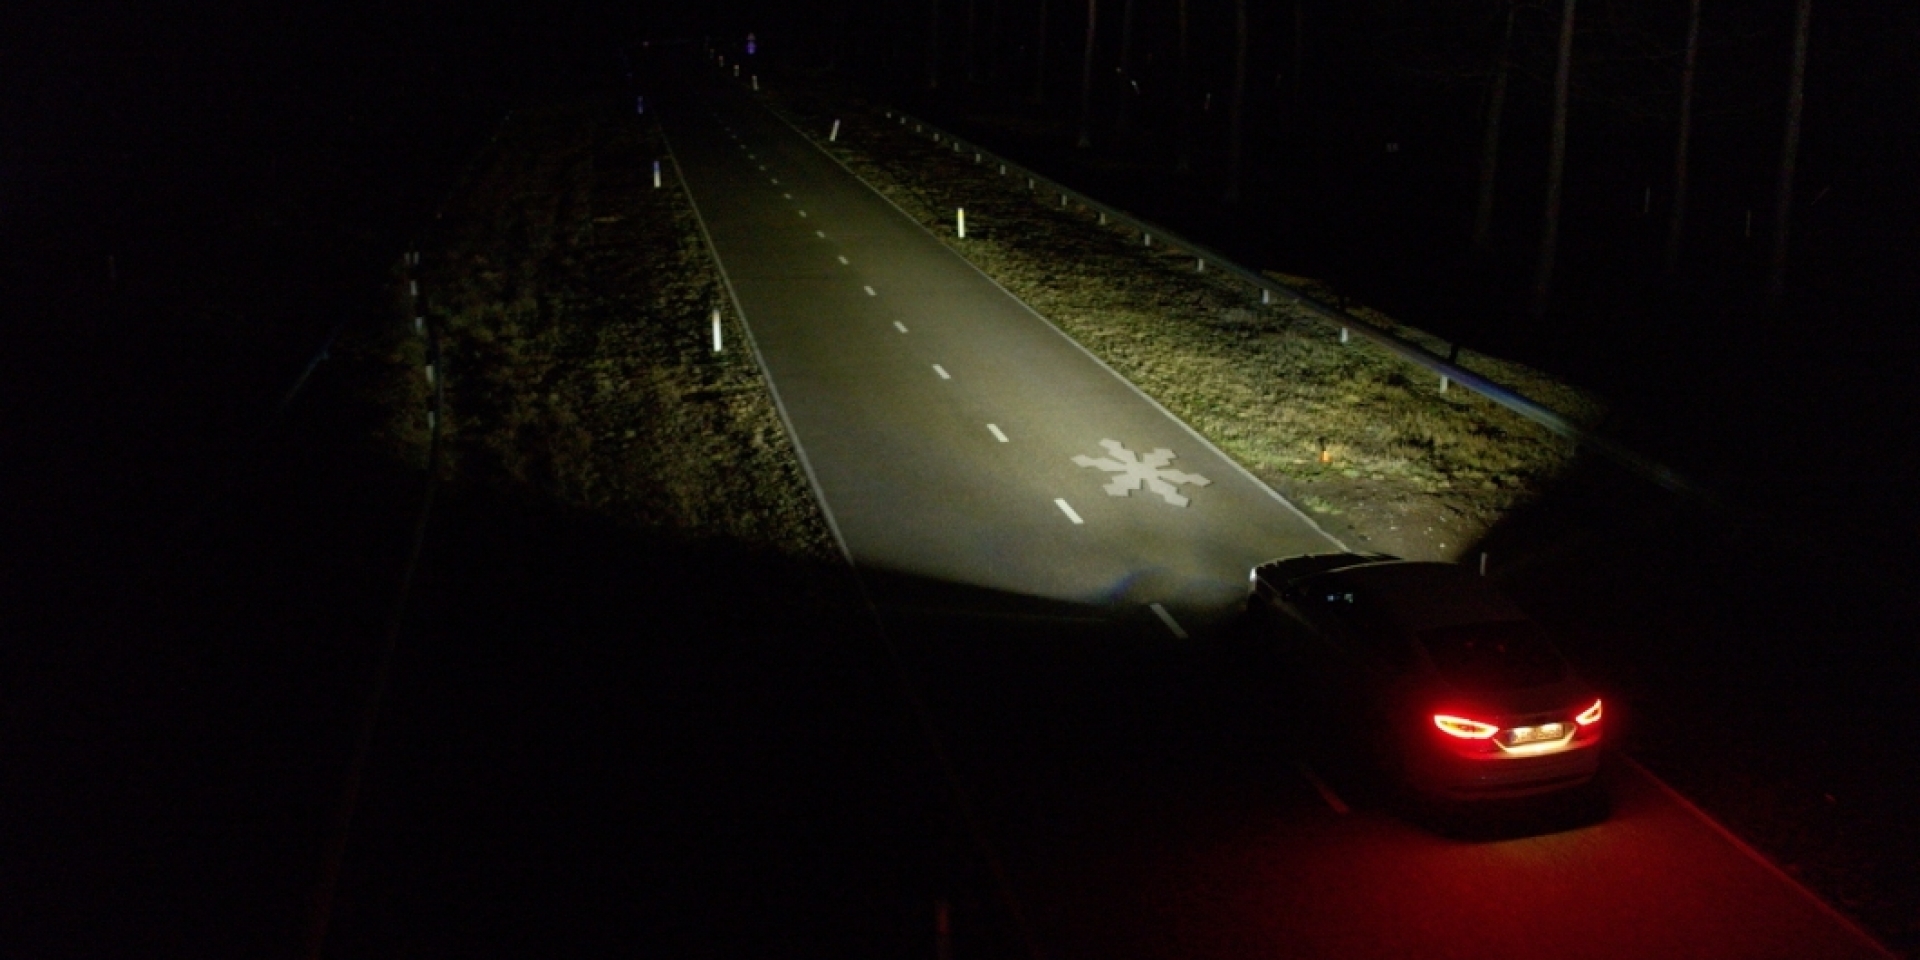 大燈就是投影機 福特展演下一代頭燈技術 將資訊直接照在道路上